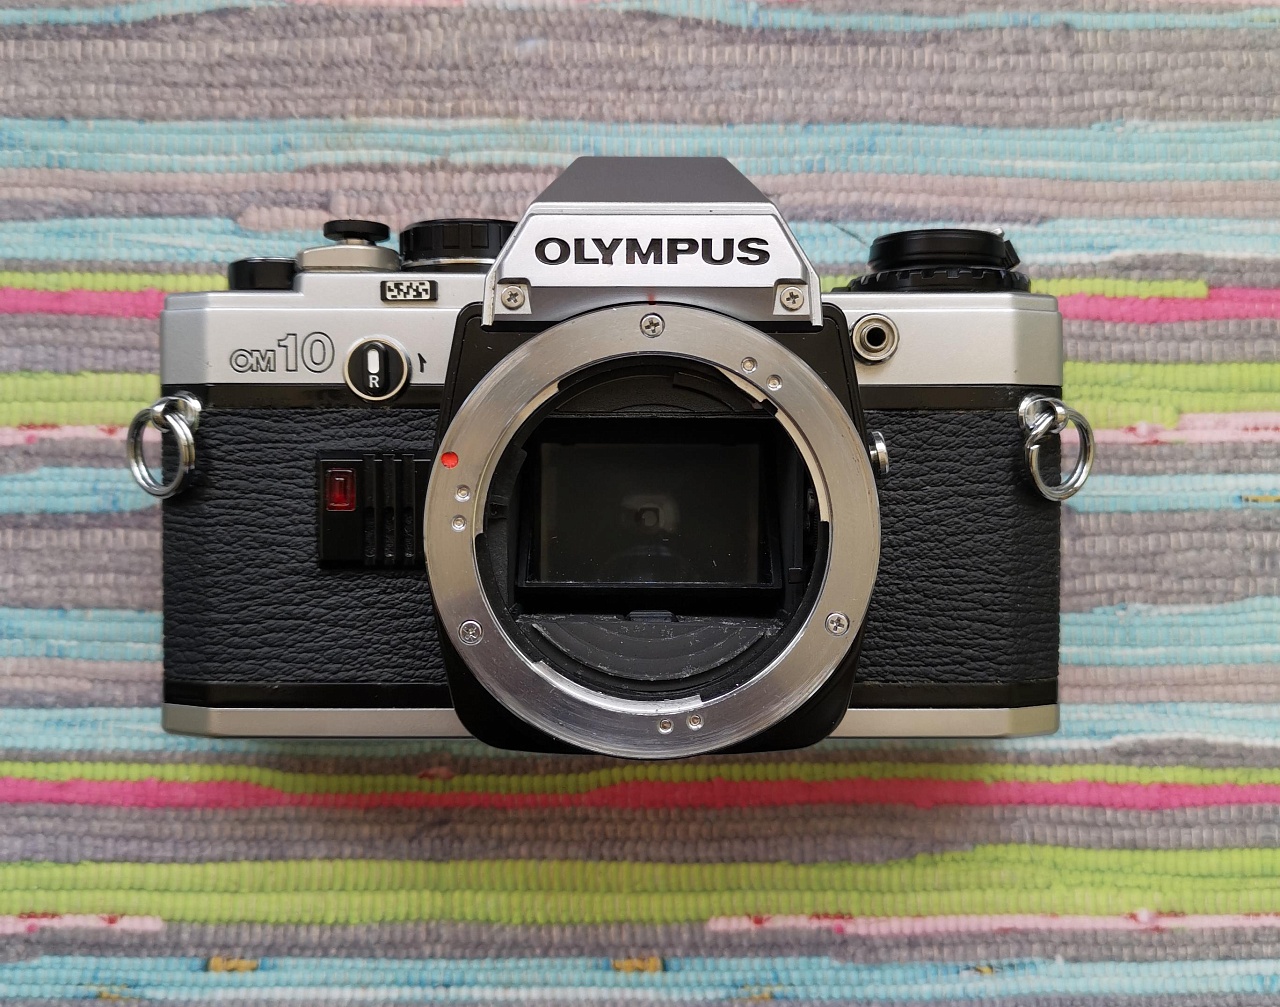 Olympus OM 10 + Olympus OM-system zuiko auto-zoom 35-105 mm фото №1